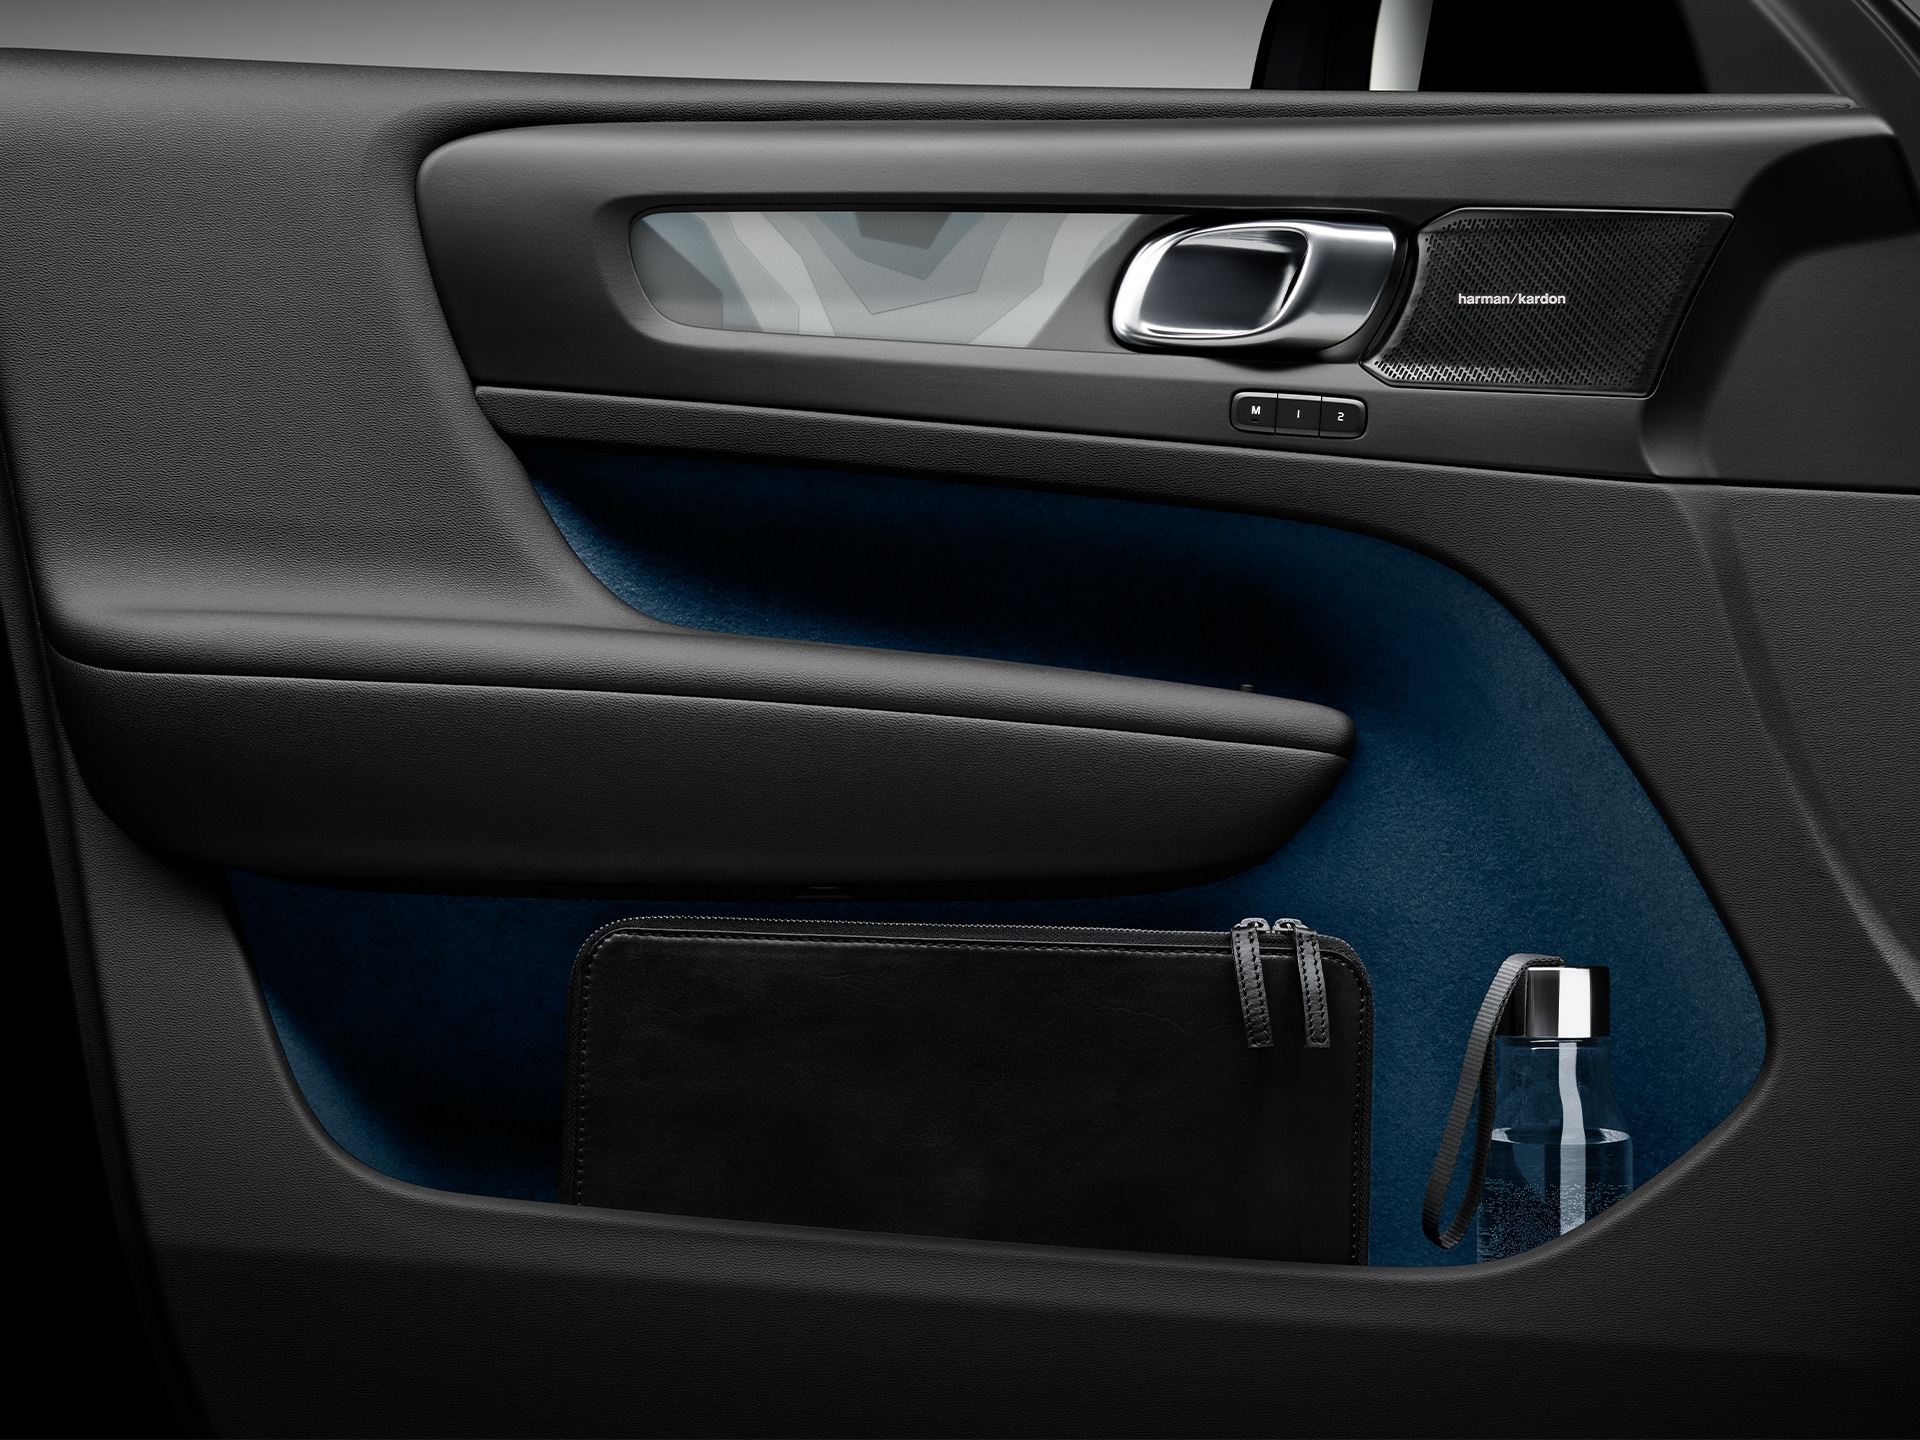 Viedie salona glabāšanas risinājumi Volvo C40 Recharge automašīnā.